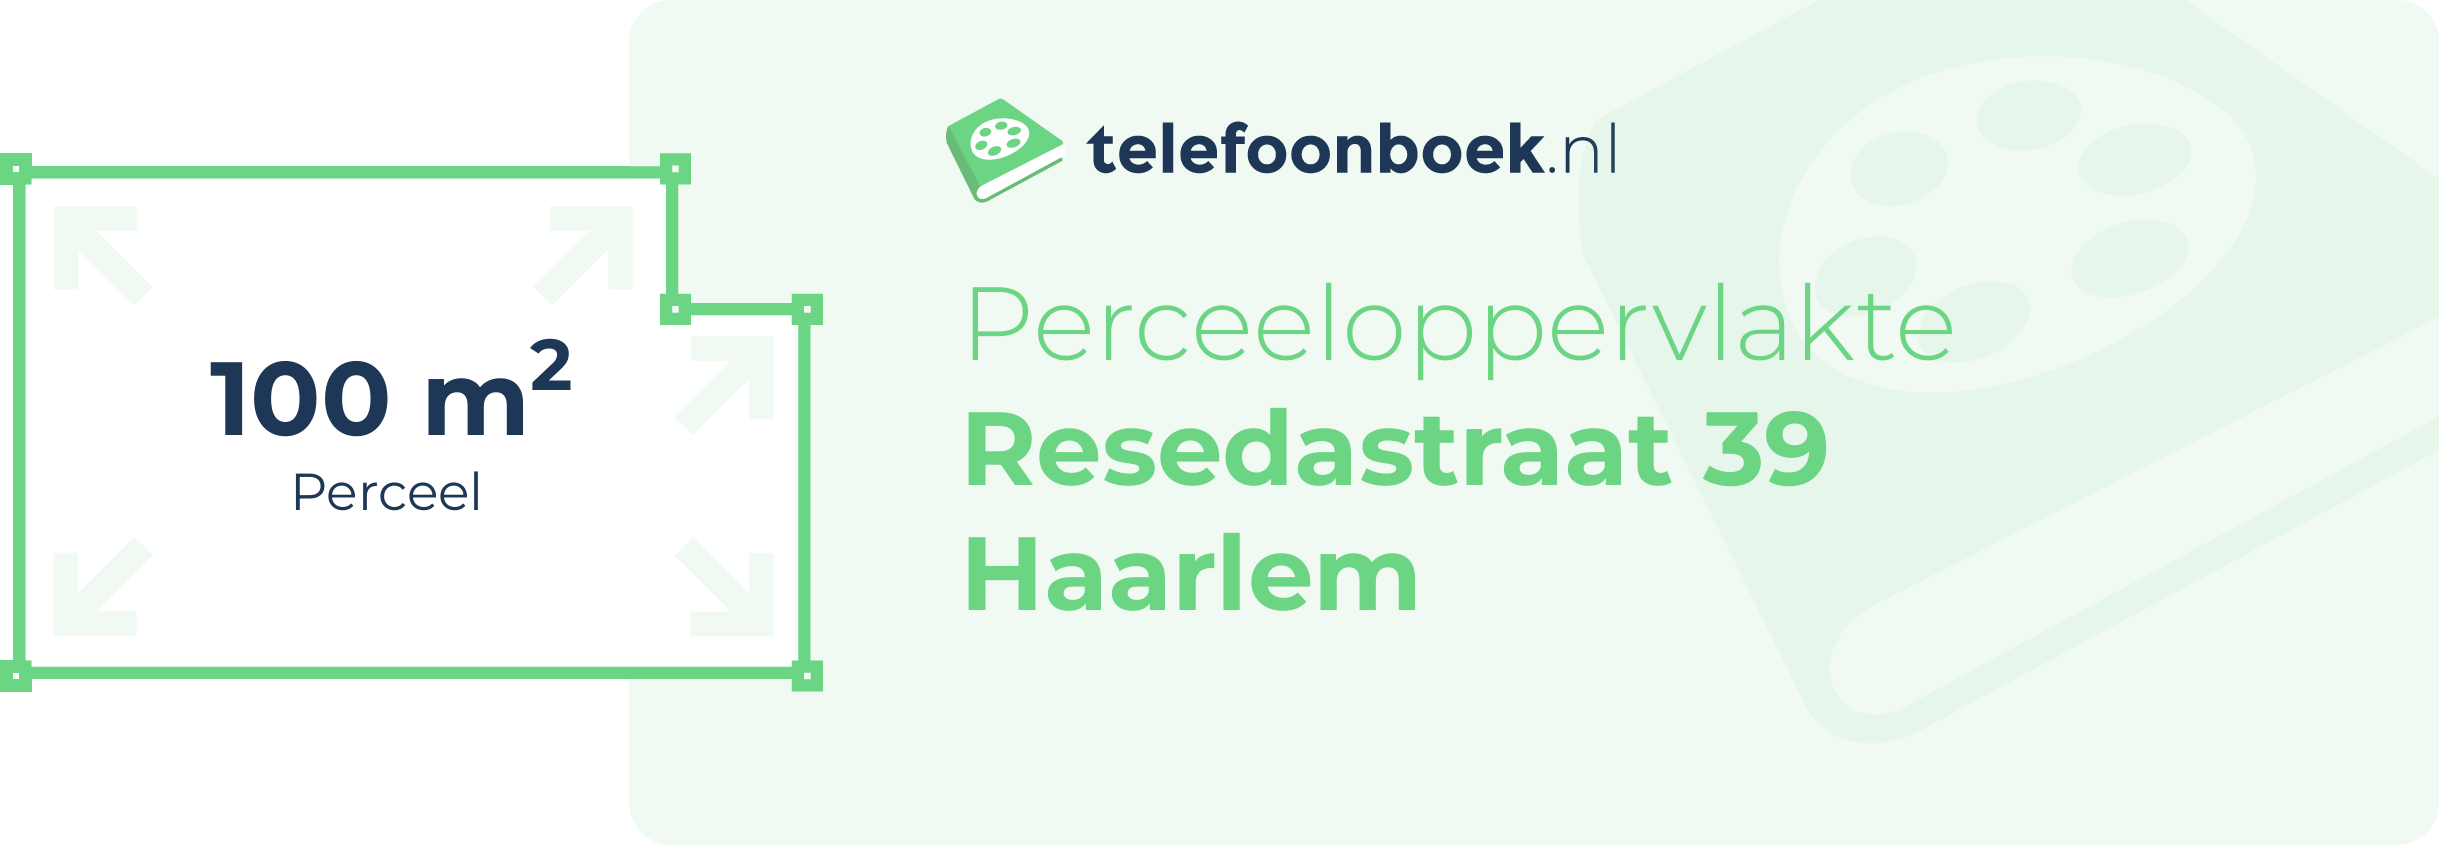 Perceeloppervlakte Resedastraat 39 Haarlem